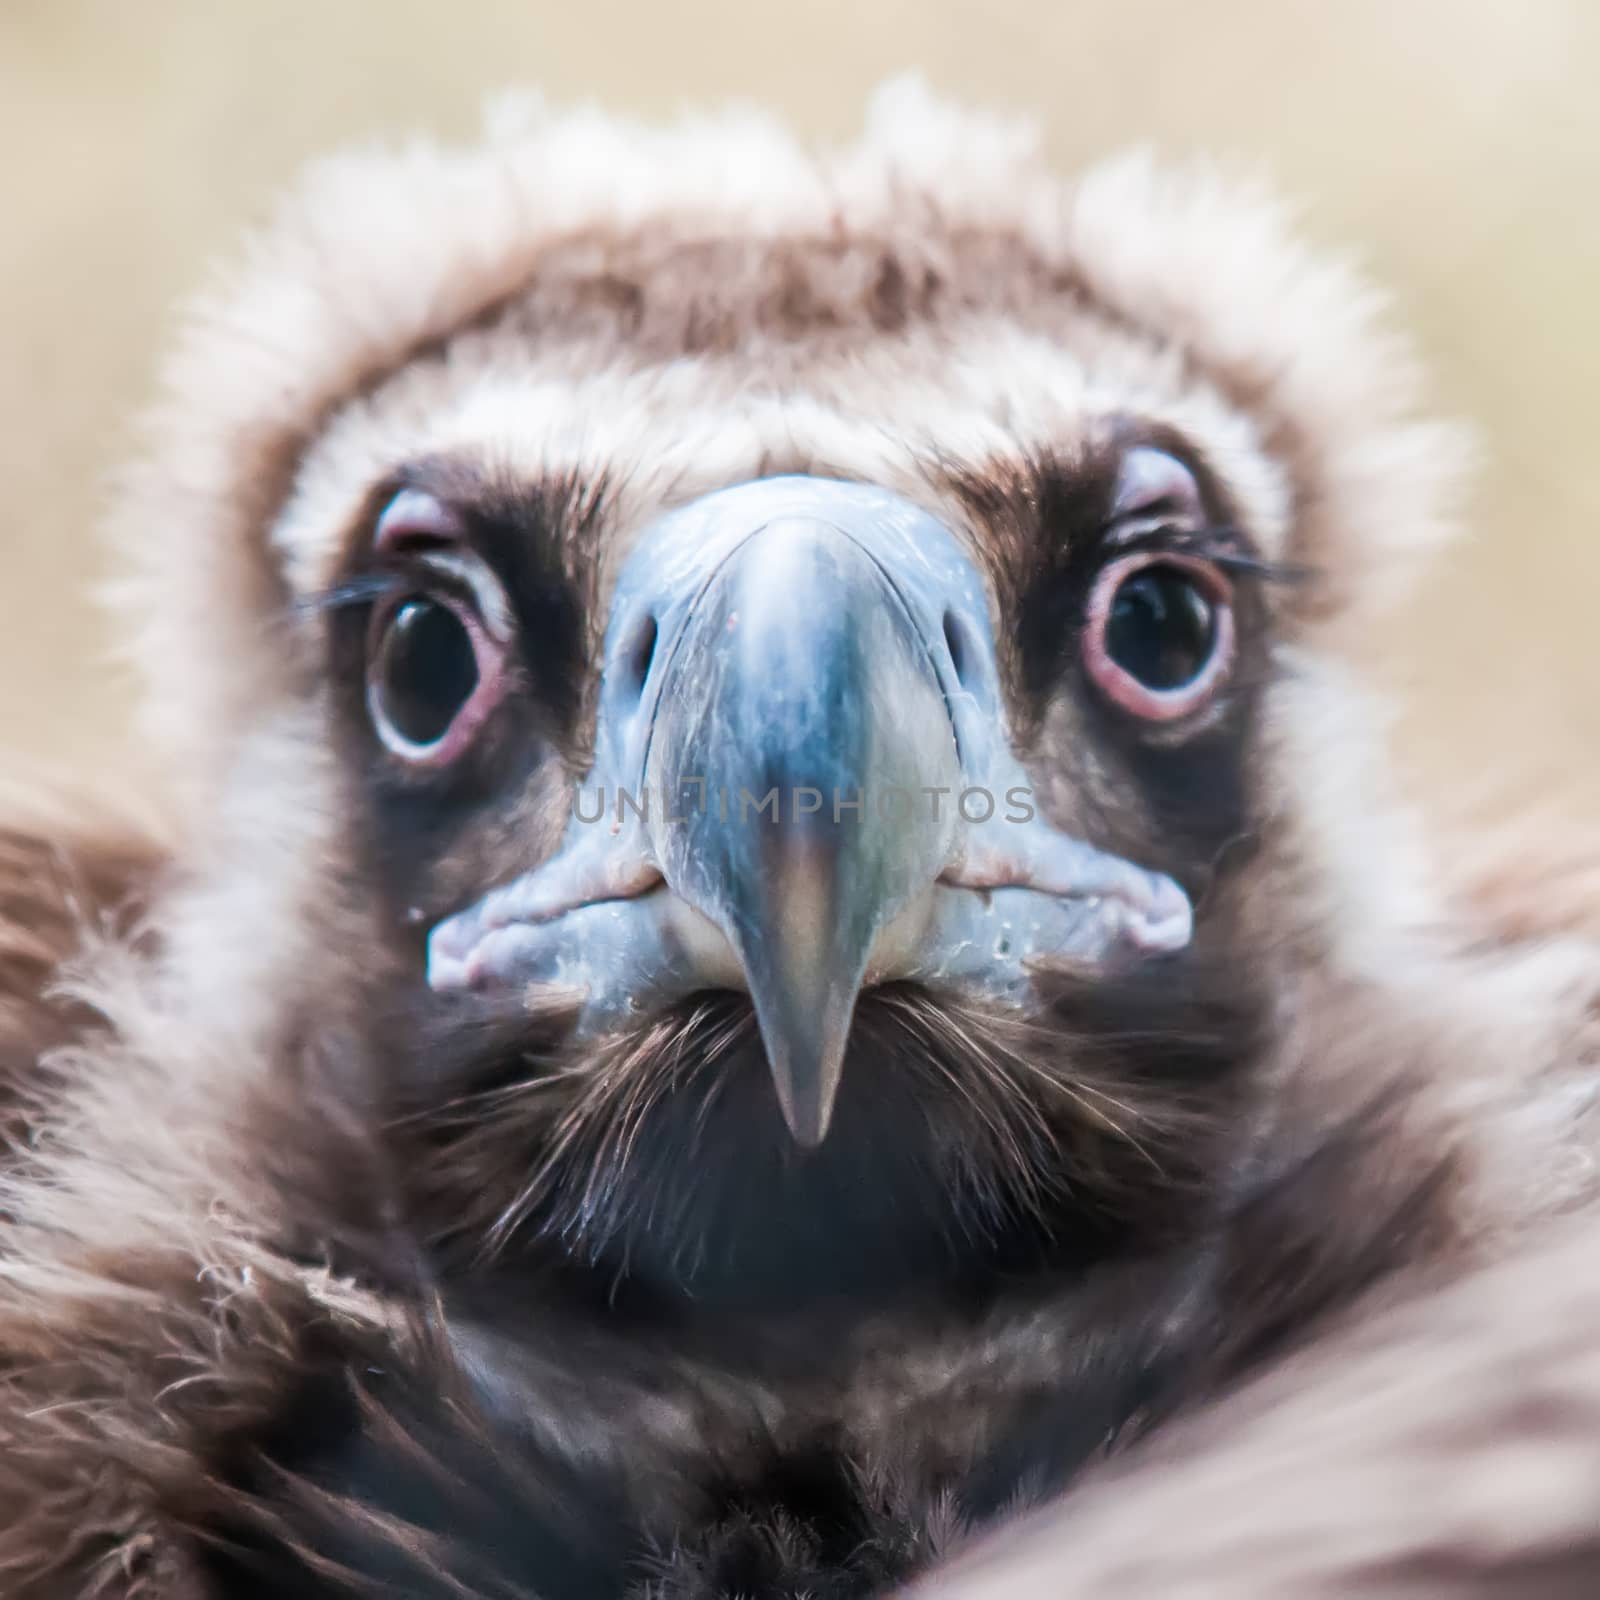 young baby vulture raptor bird